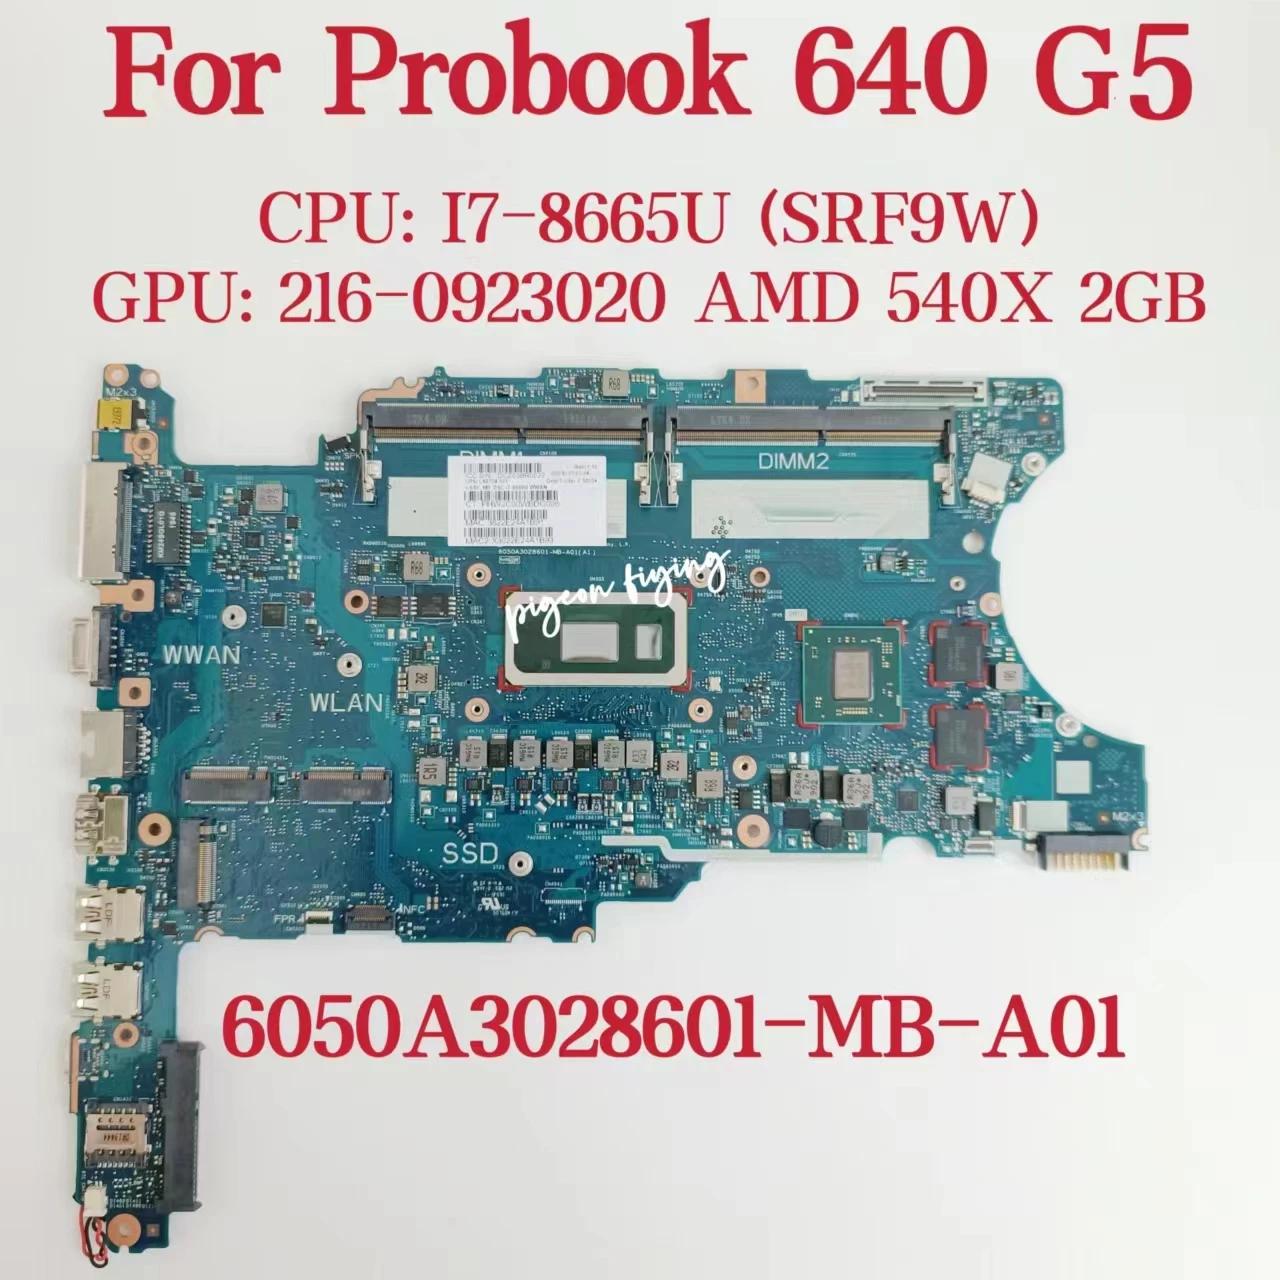 HP Probook 640 G5 Ʈ  CPU: I7-8665U SRF9W GPU:AMD 540X 2GB DDR4 L58704-001 L58704-601, 6050A3028601-MB-A01